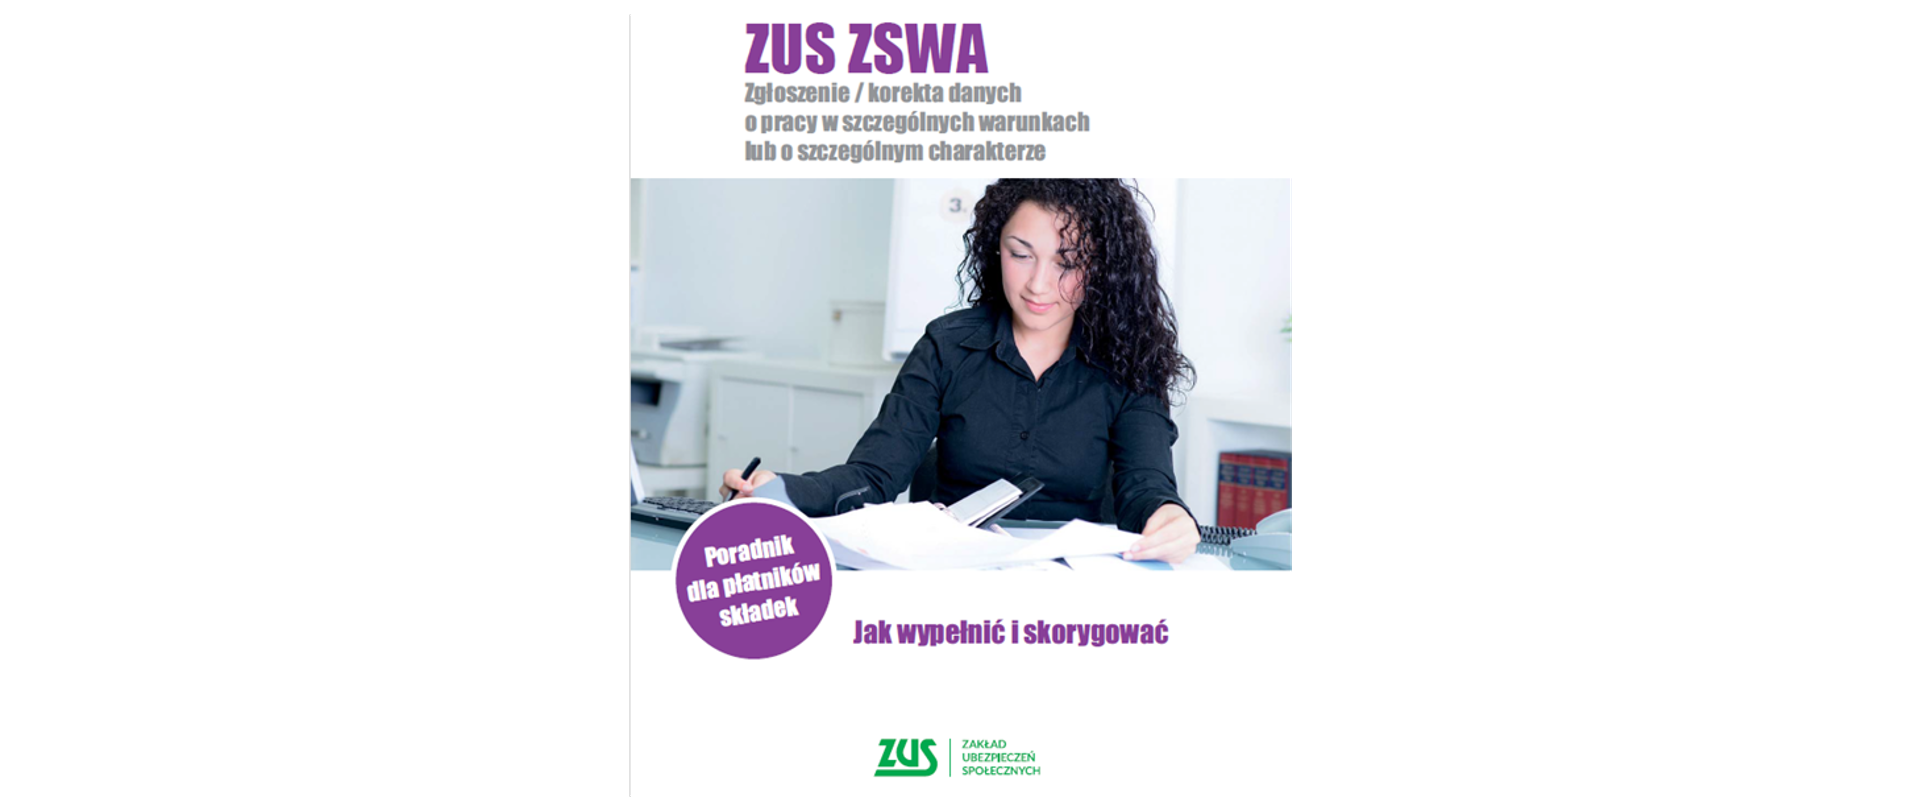 Banner z tekstem. ZUS ZSWA – Zgłoszenie / korekta danych o pracy w szczególnych warunkach lub o szczególnym charakterze. Poradnik dla płatników składek. Jak wypełnić i skorygować 